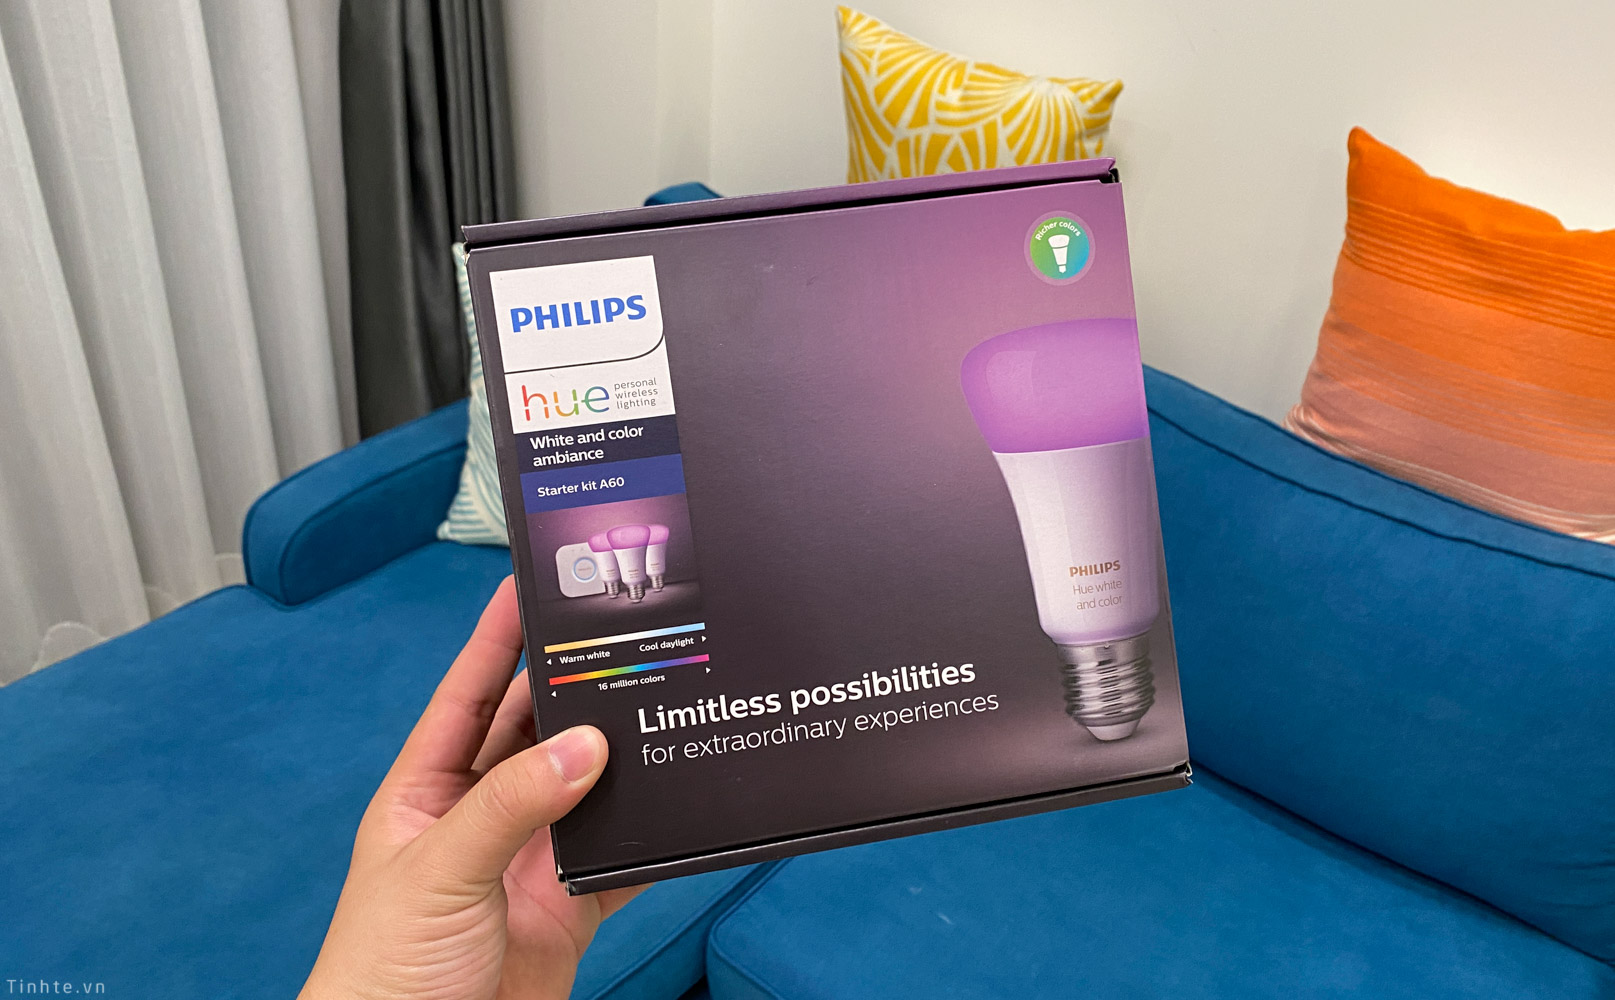 Trên tay bộ bóng màu starter kit Philips Hue sắp bán chính hãng ở Việt Nam